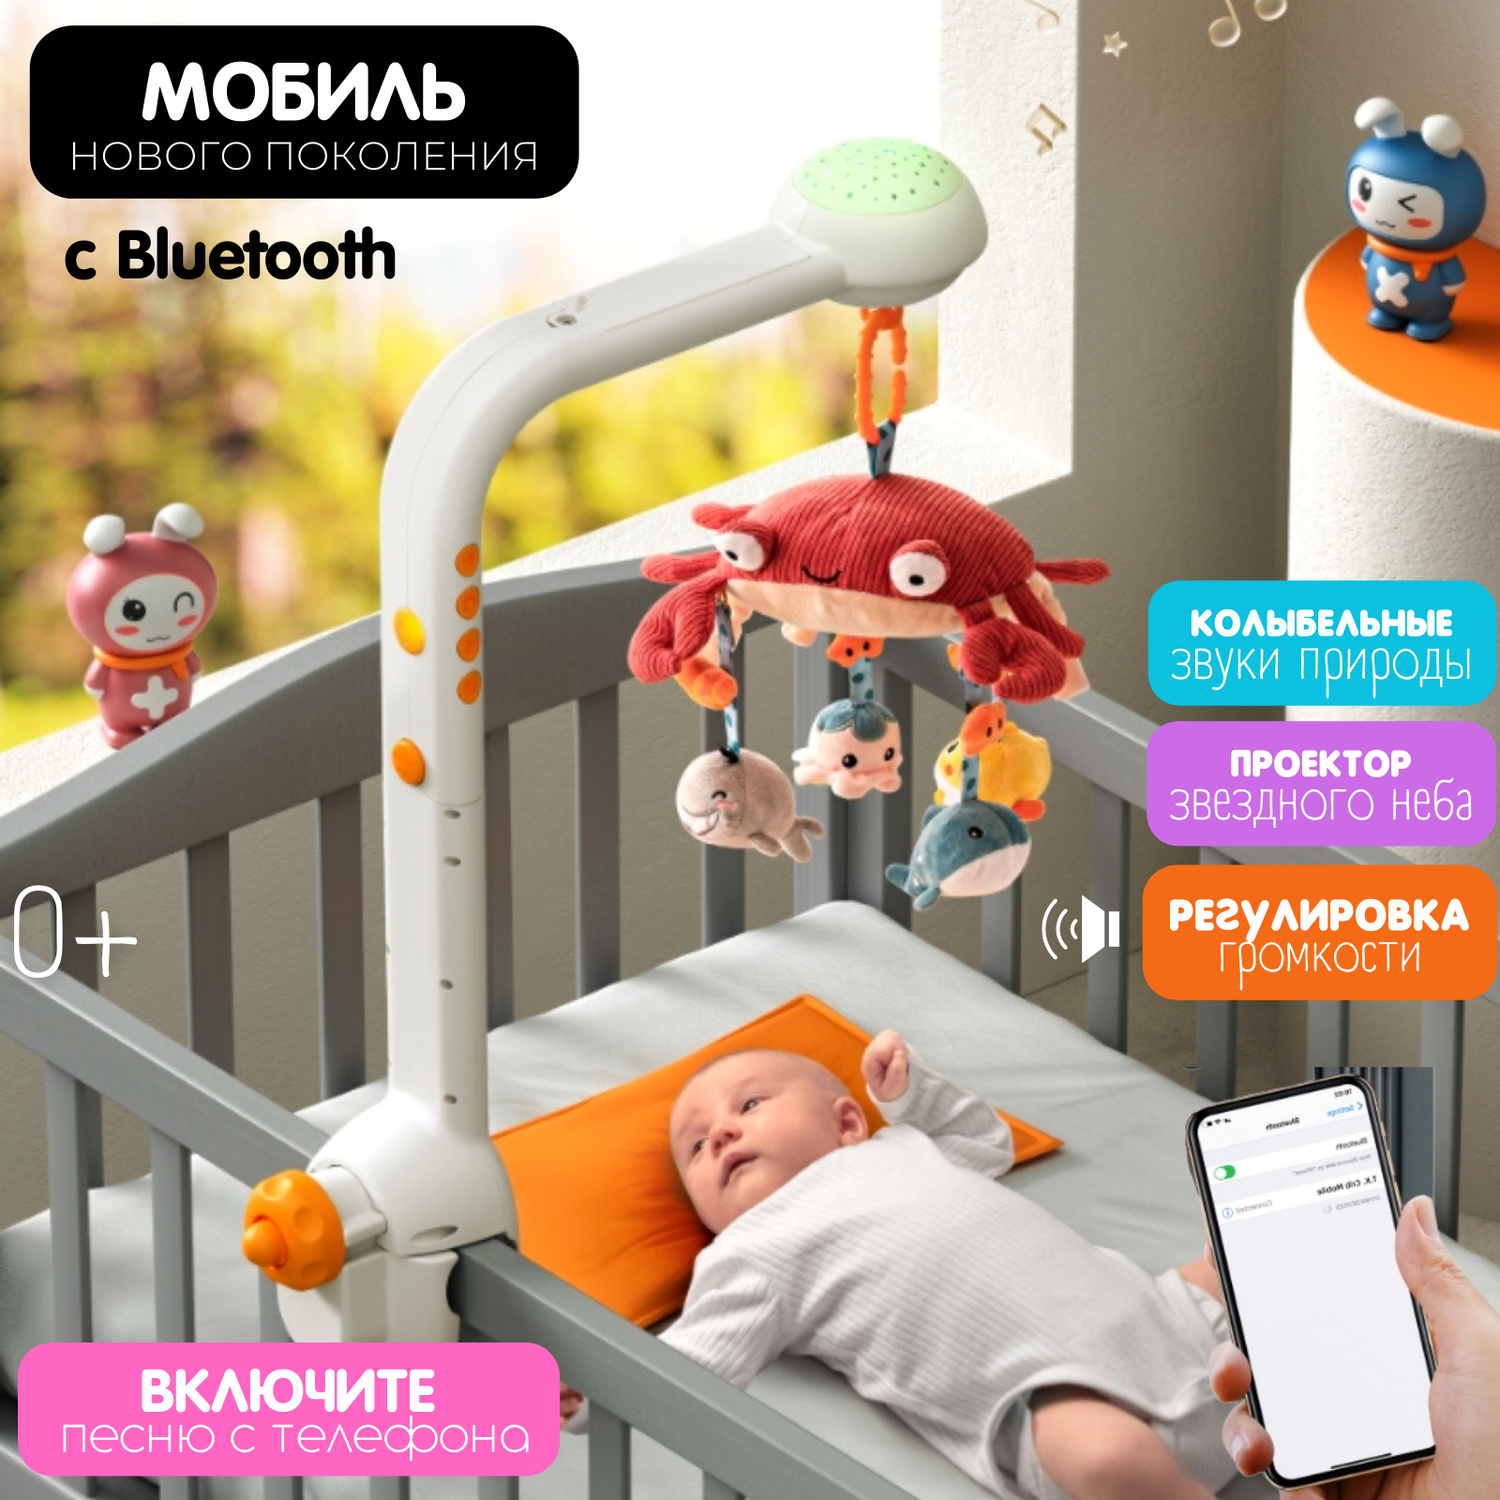 Музыкальные мобили на детскую кроватку для новорожденного, купить в интернет-магазине